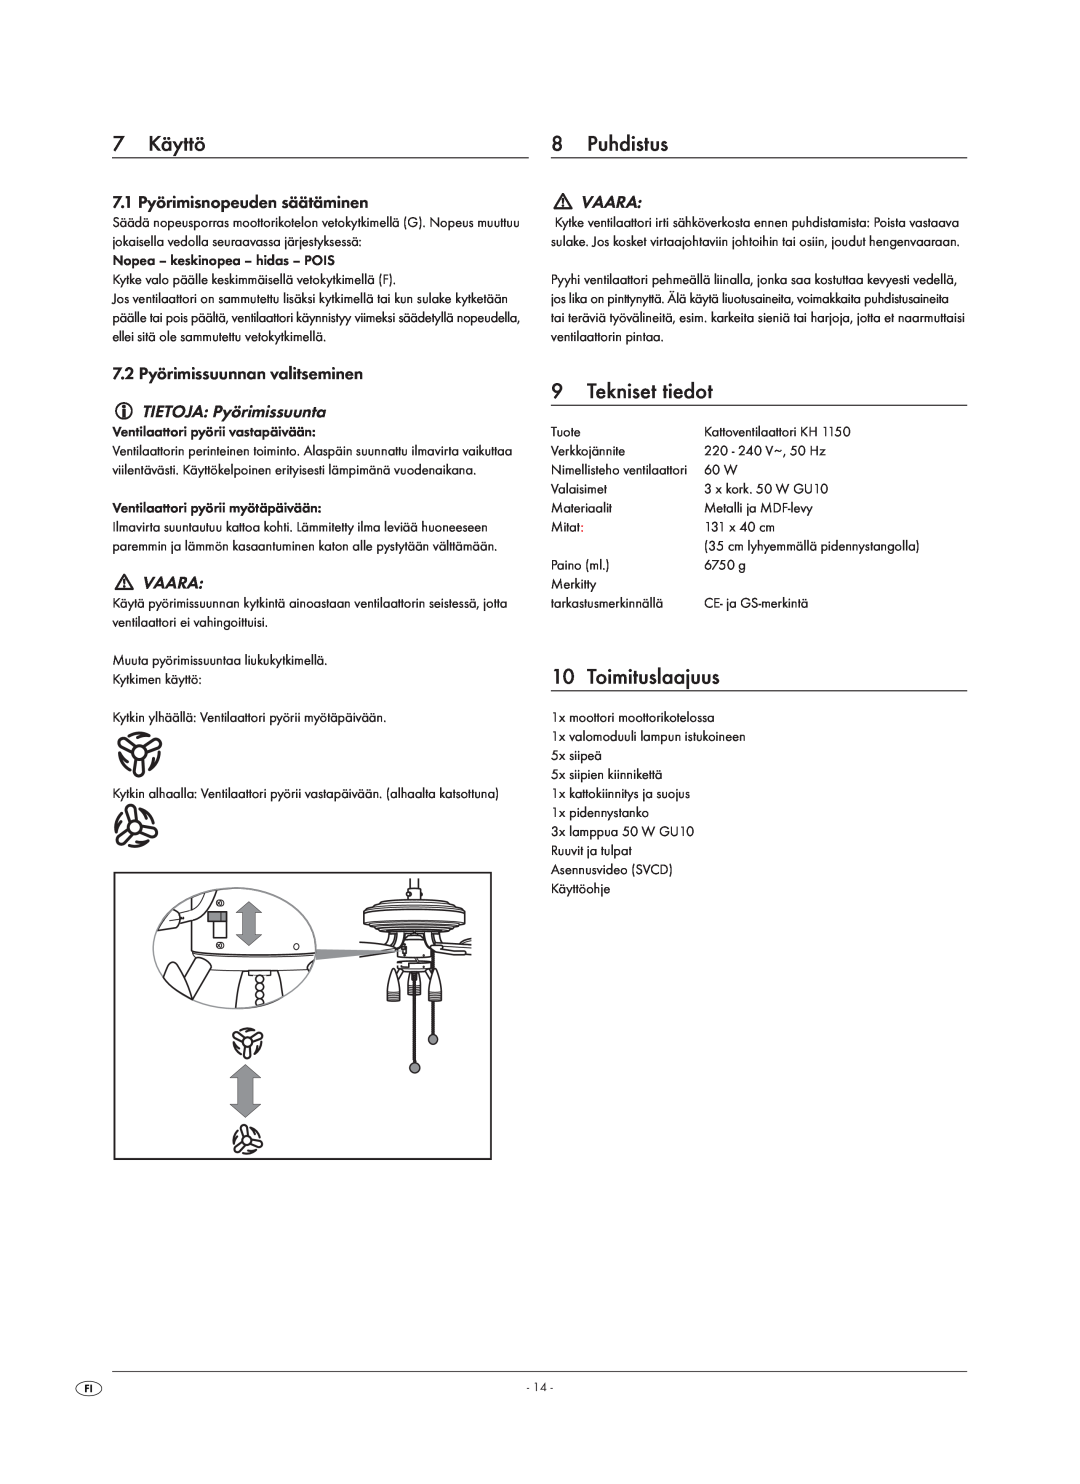 Kompernass KH 1150 manual 7 Käyttö, Puhdistus, 9Tekniset tiedot, Toimituslaajuus, 7.1 Pyörimisnopeuden säätäminen, Vaara 